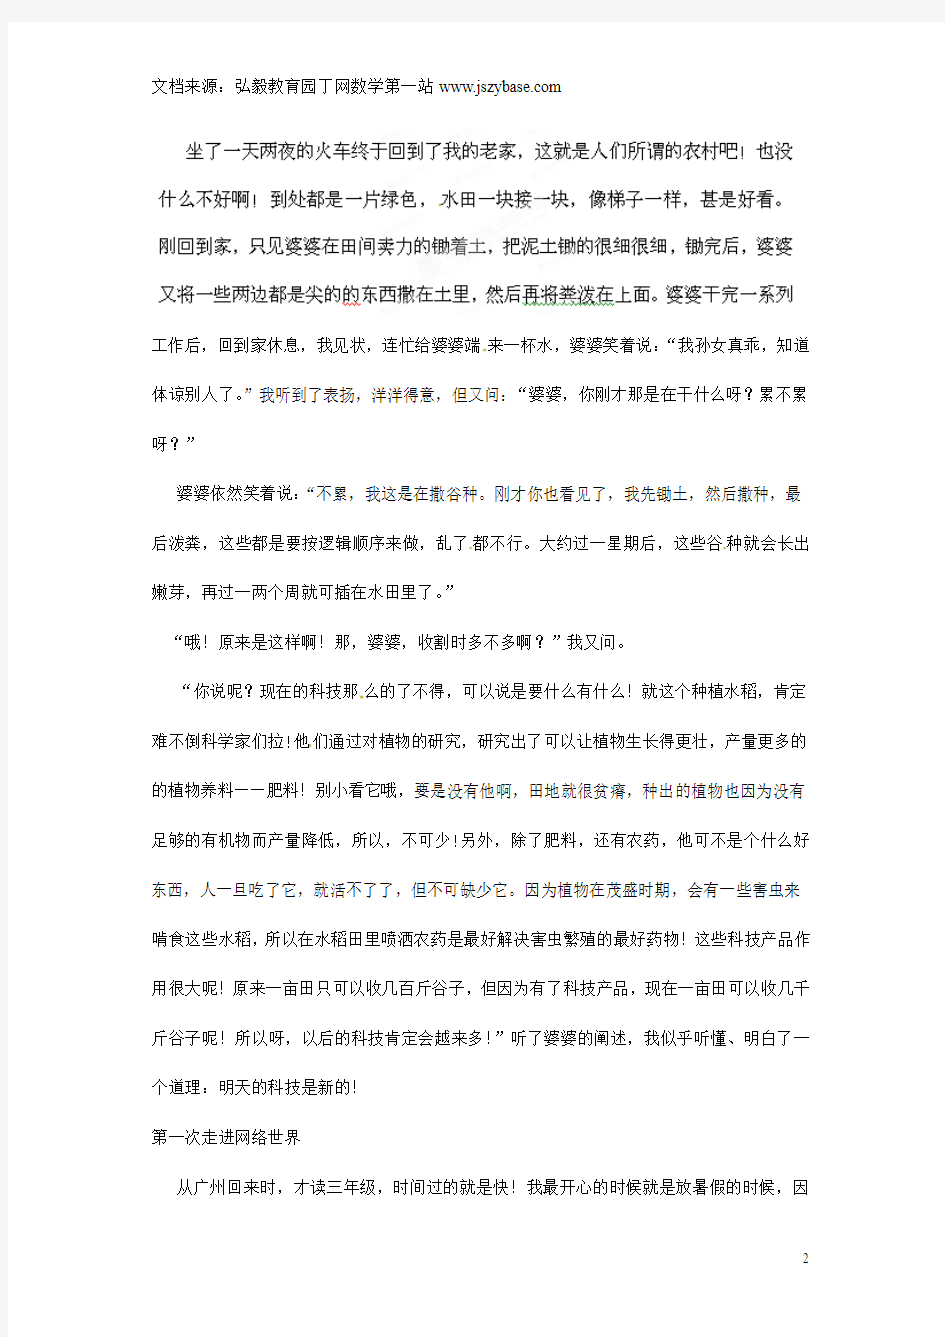 重庆市綦江县隆盛中学初中科技论文 明天的科技是新的